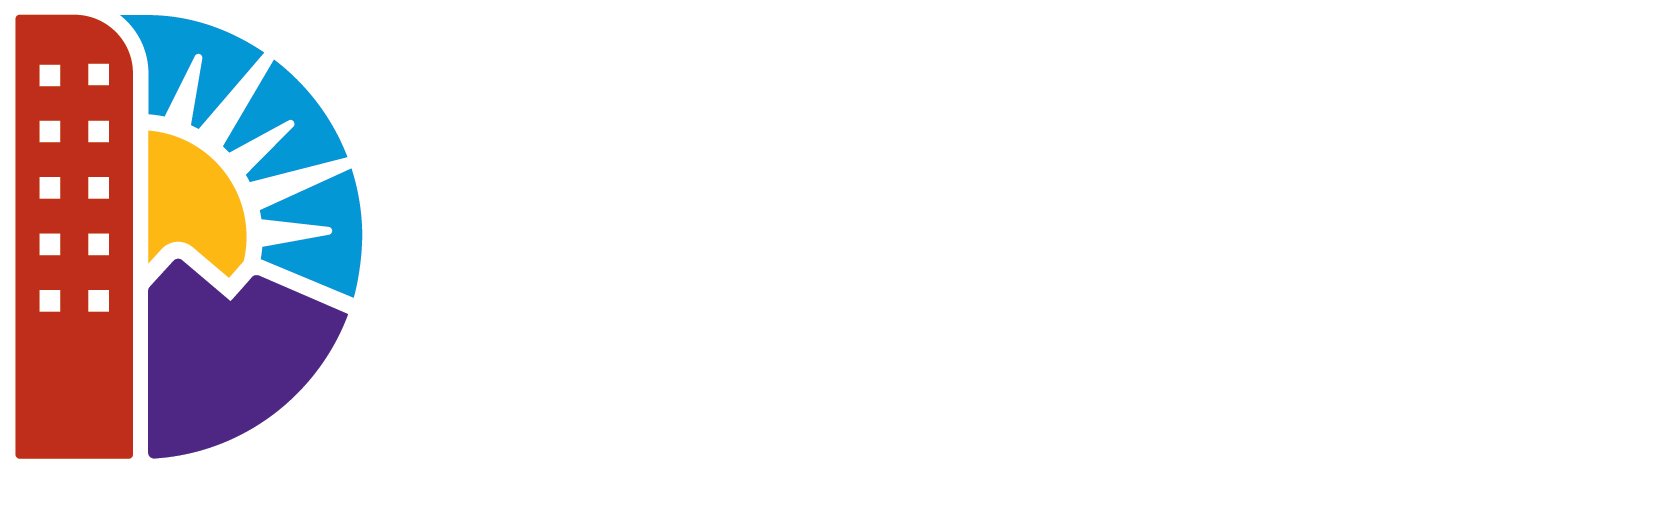 Denver Transportation and Infrastructure Logo